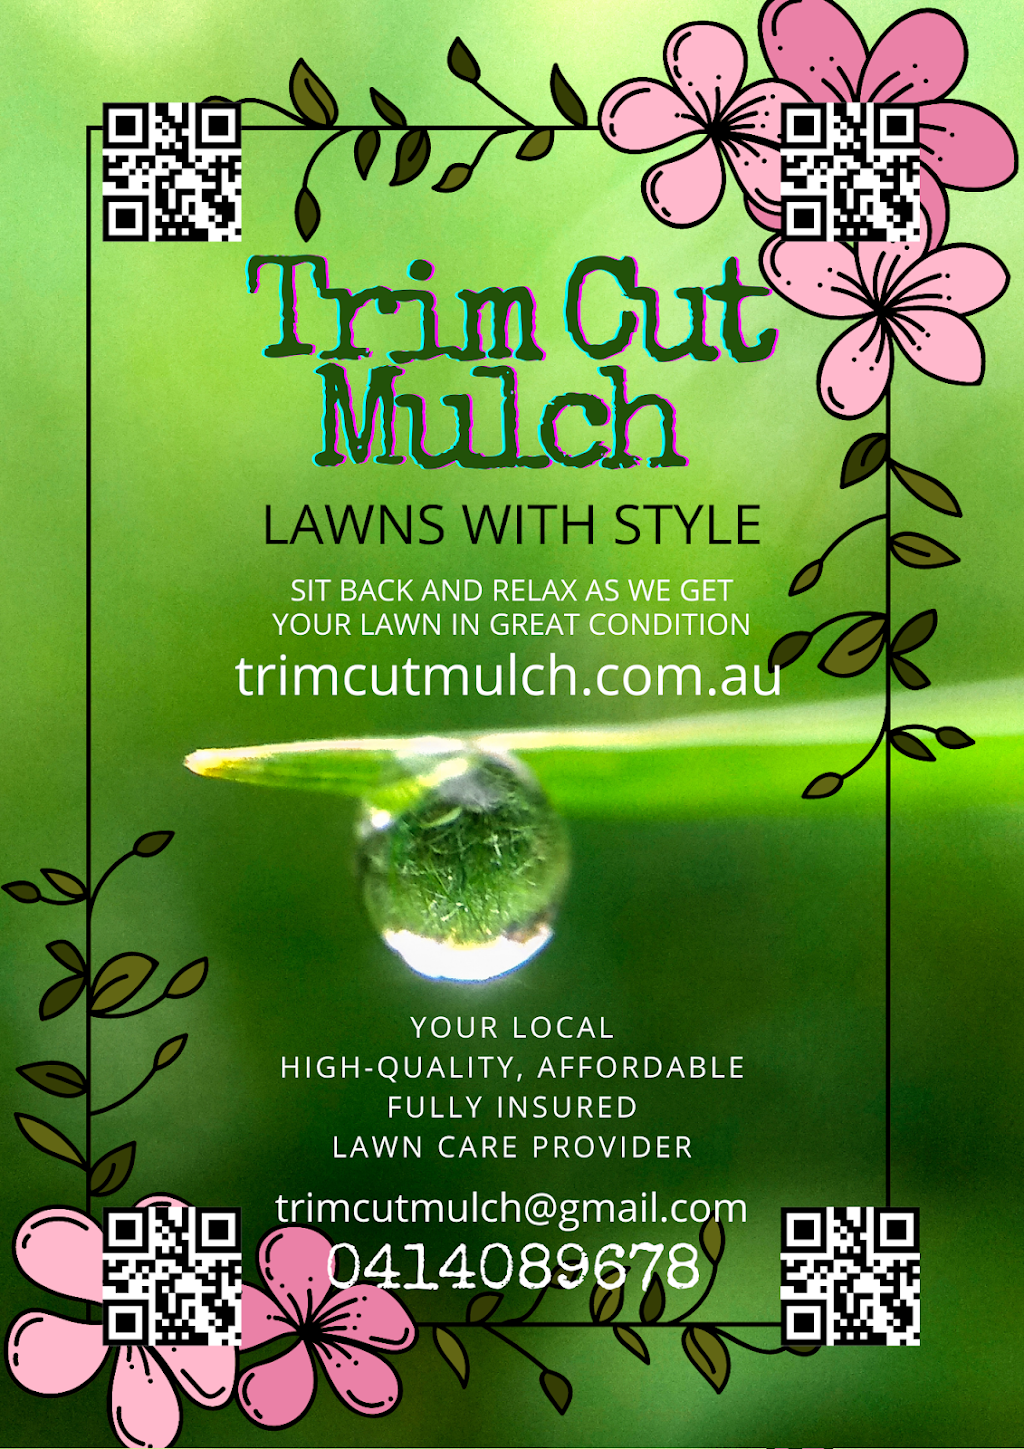 Trim Cut Mulch | general contractor | Caloundra West QLD 4551, Australia | 0414089678 OR +61 414 089 678